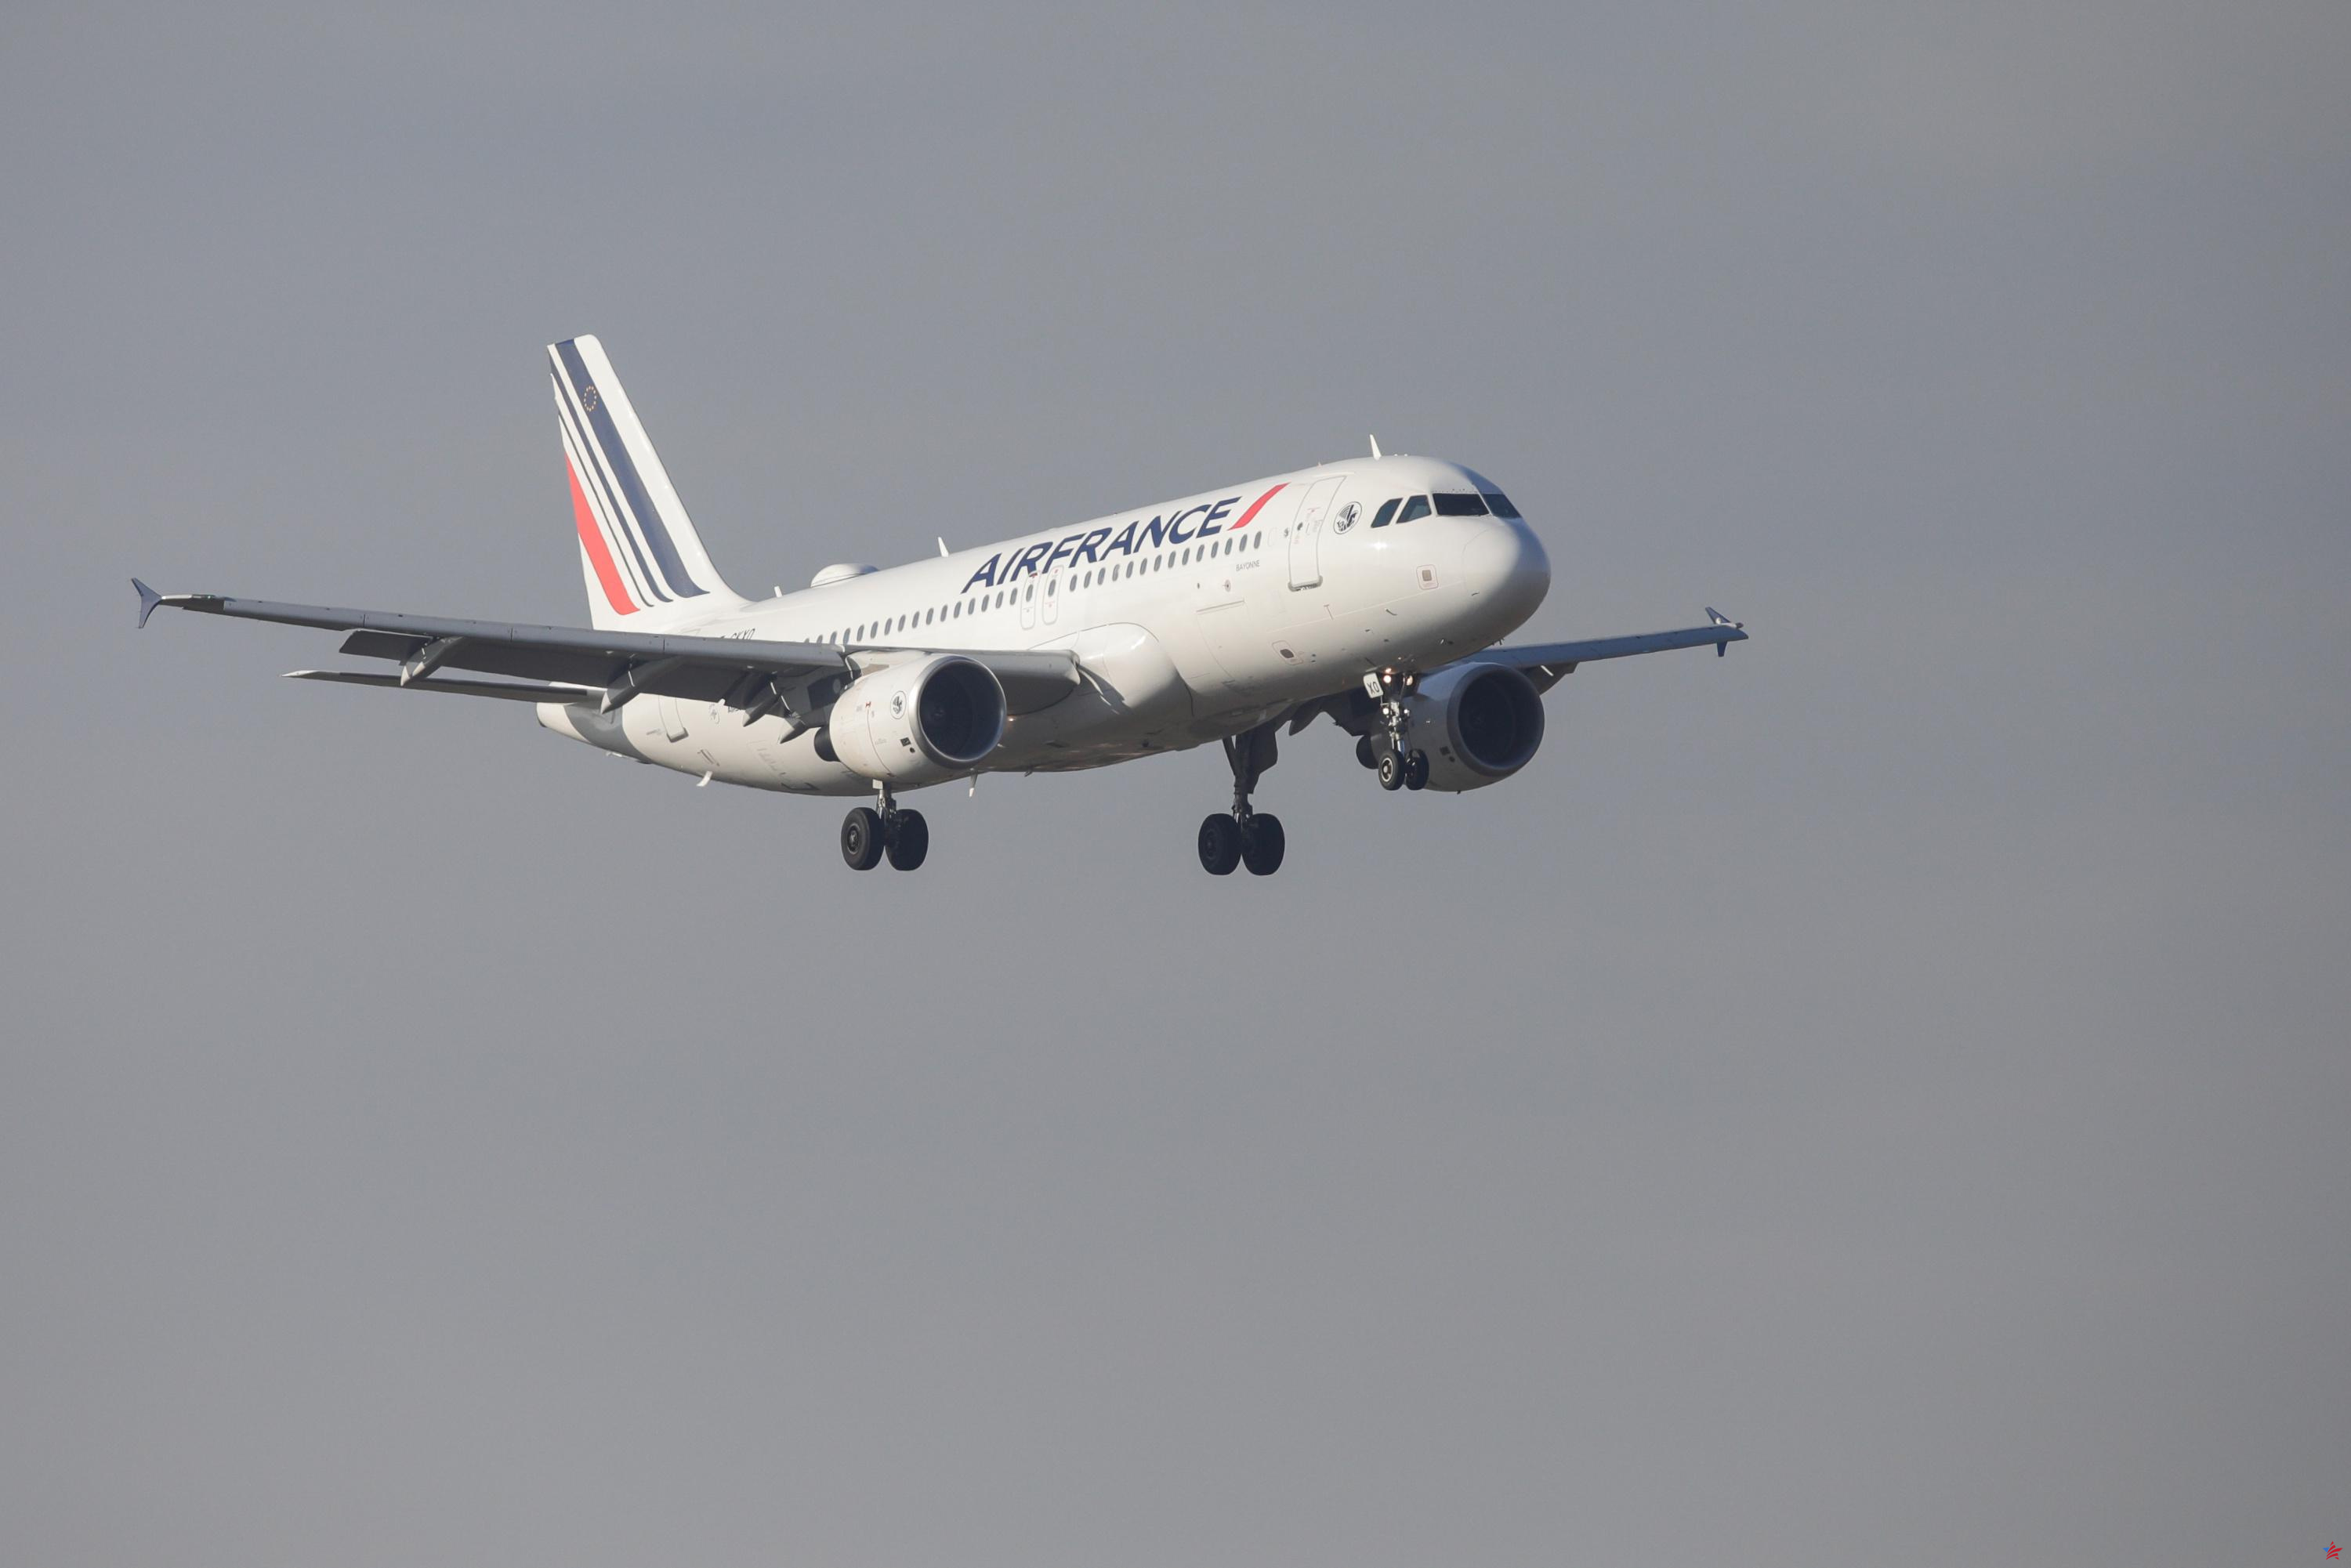 El tráfico aéreo en Francia alcanzó en diciembre su nivel de 2019, el primero desde la pandemia